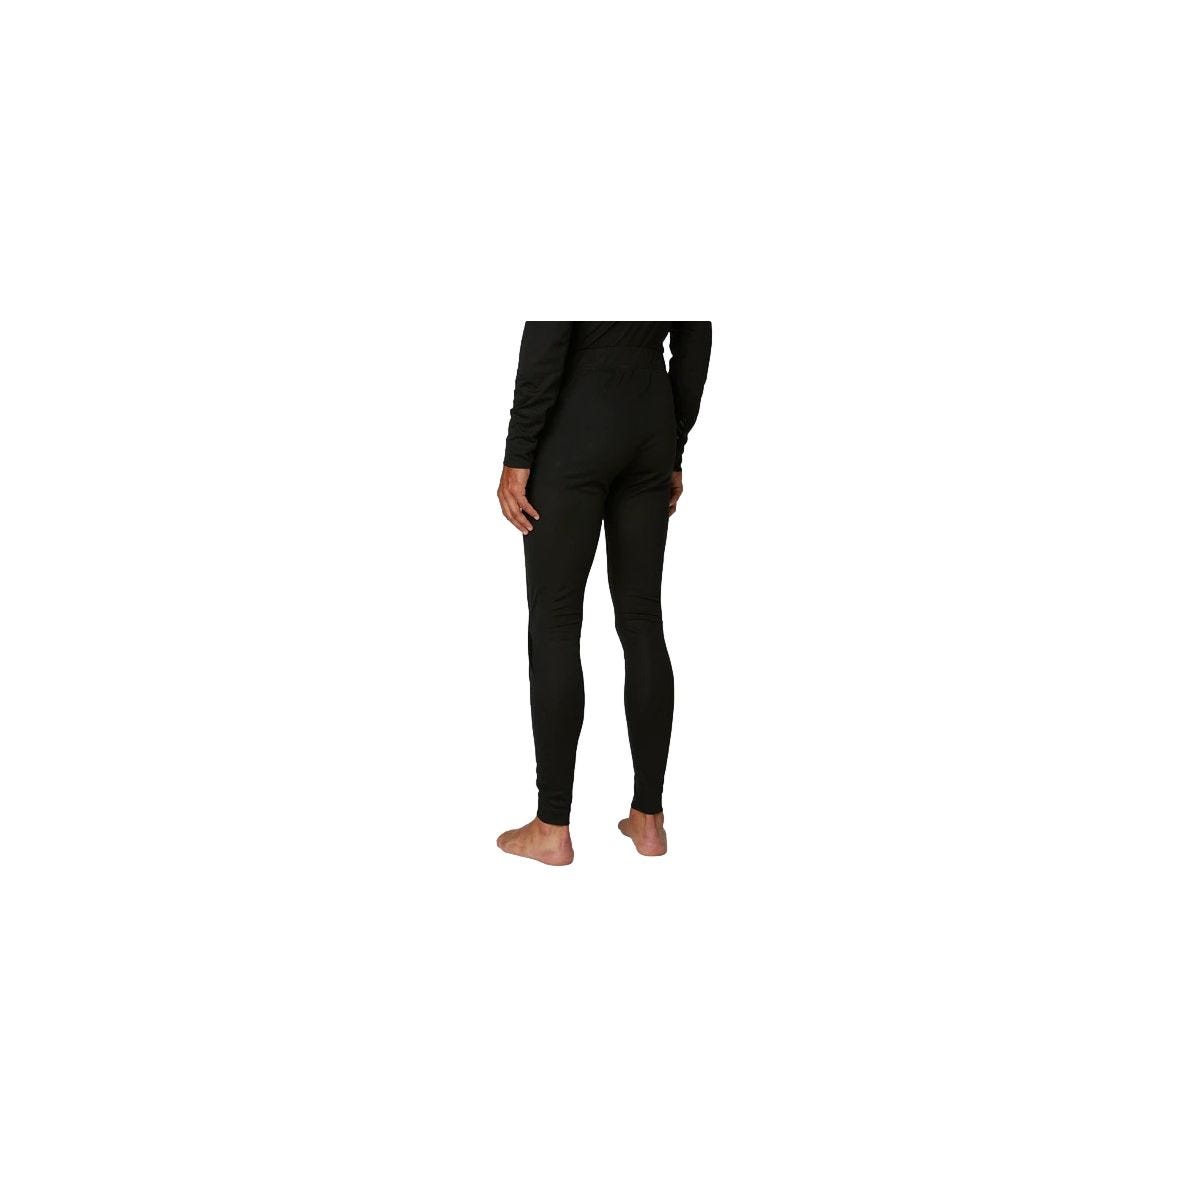 Pantalon sous-vêtement technique Lifa Noir - Helly Hansen - Taille 2XL 3